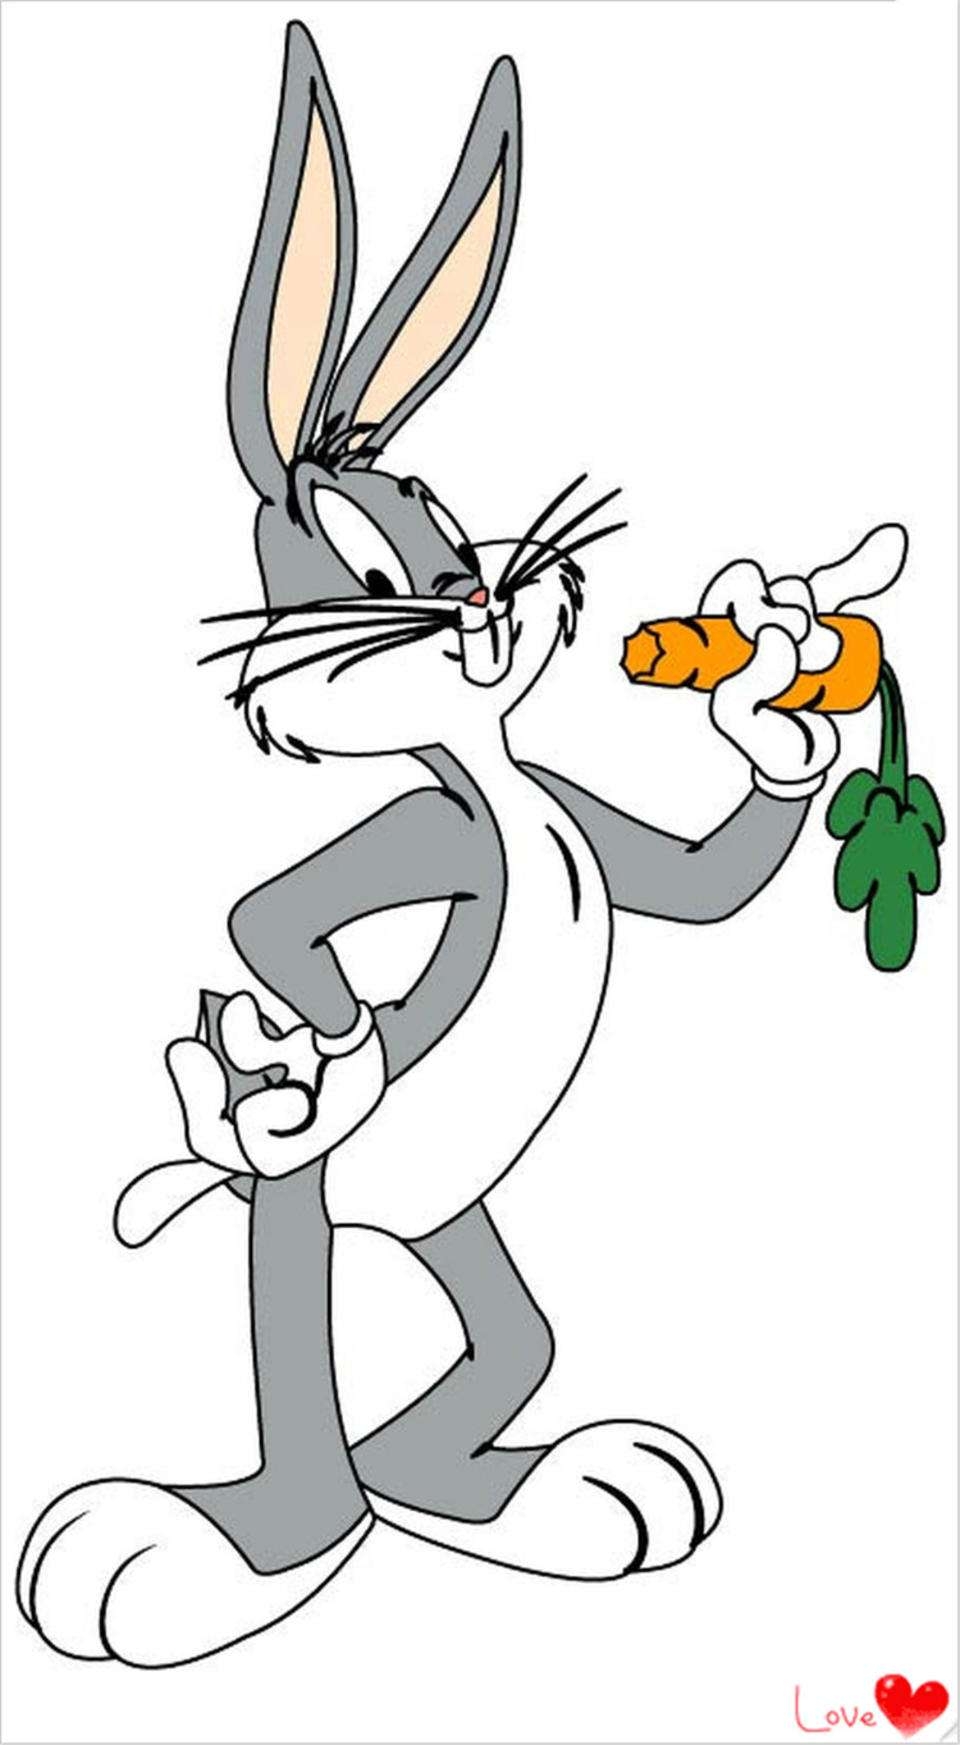 创作出的咧着大嘴的兔巴哥形象是一代人心目中经典的迪士尼动画形象